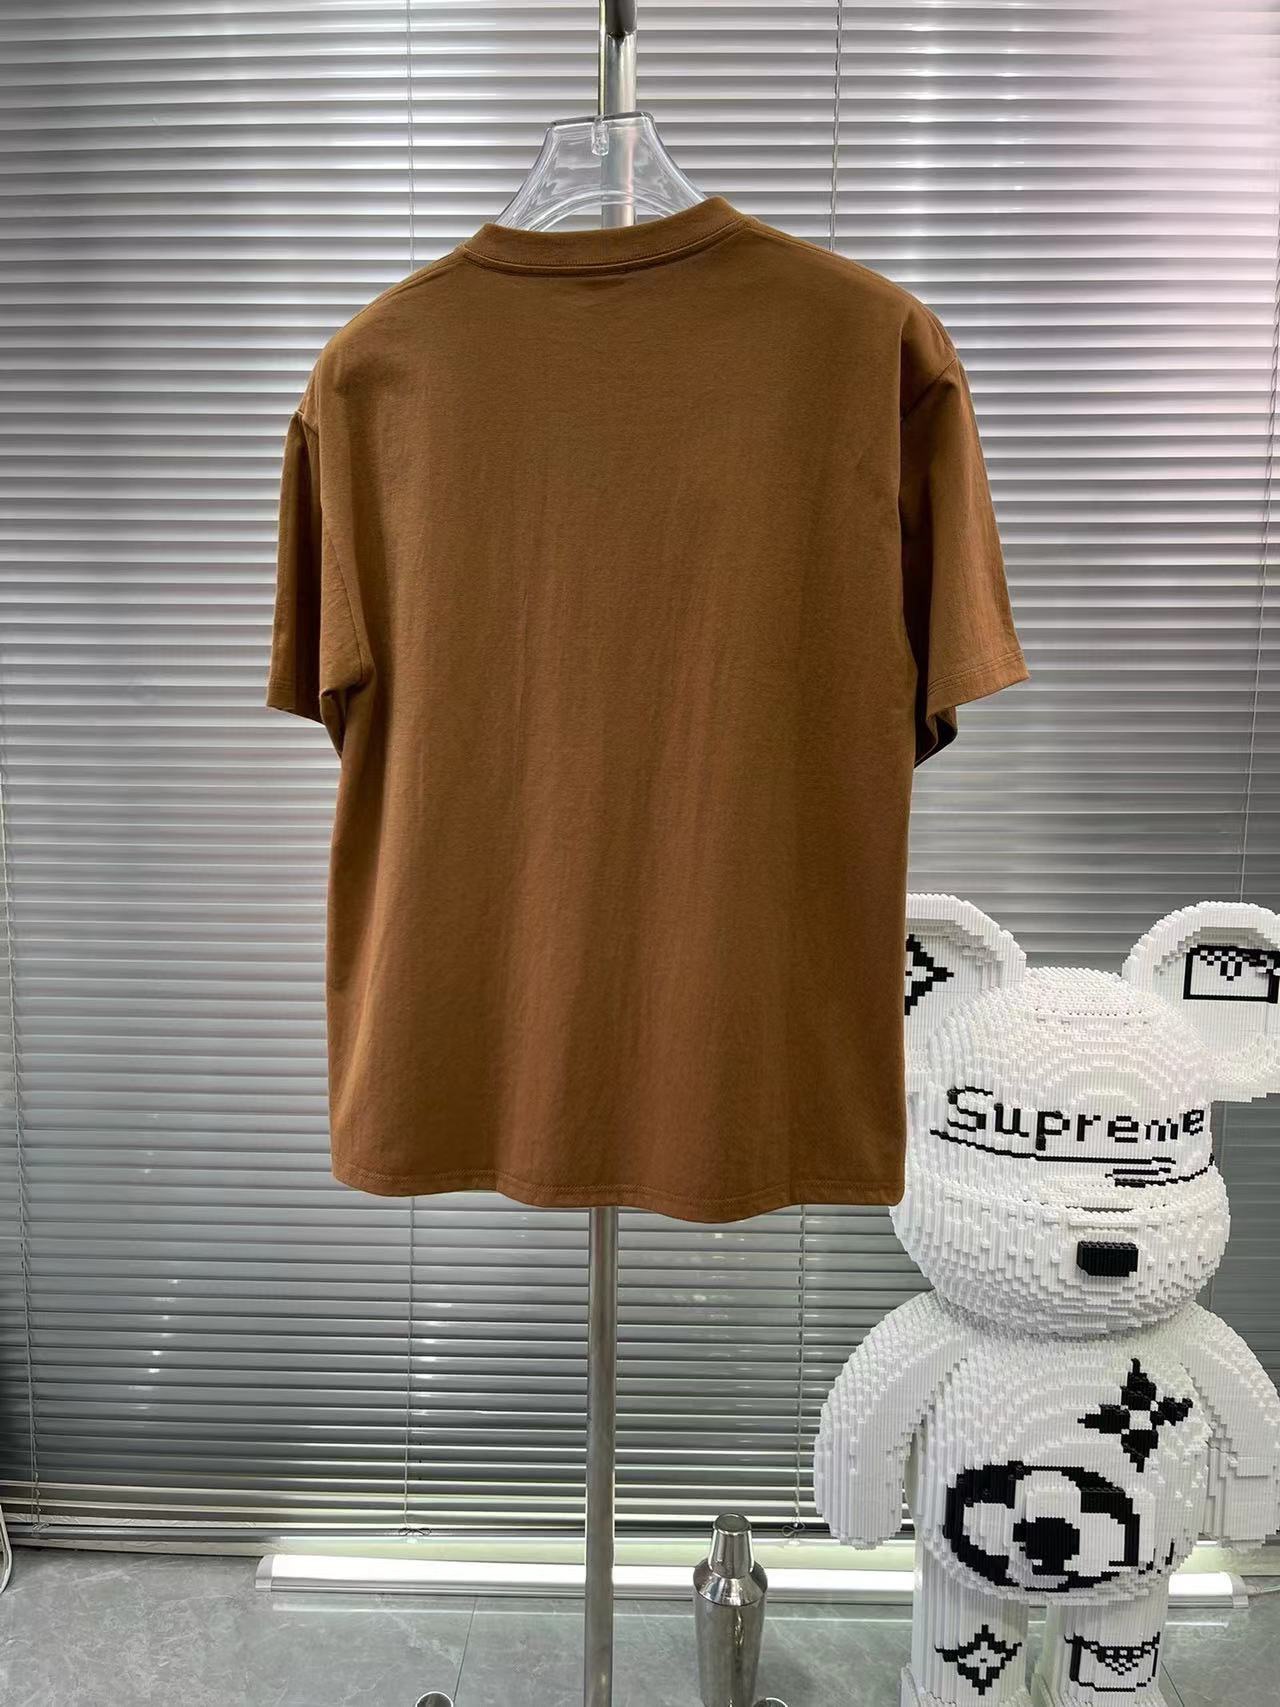 fendi シャツ レディース激安通販 トップス 綿100% 熊プリント 短袖 Tシャツ 柔らかい メンズ ブラウン_5